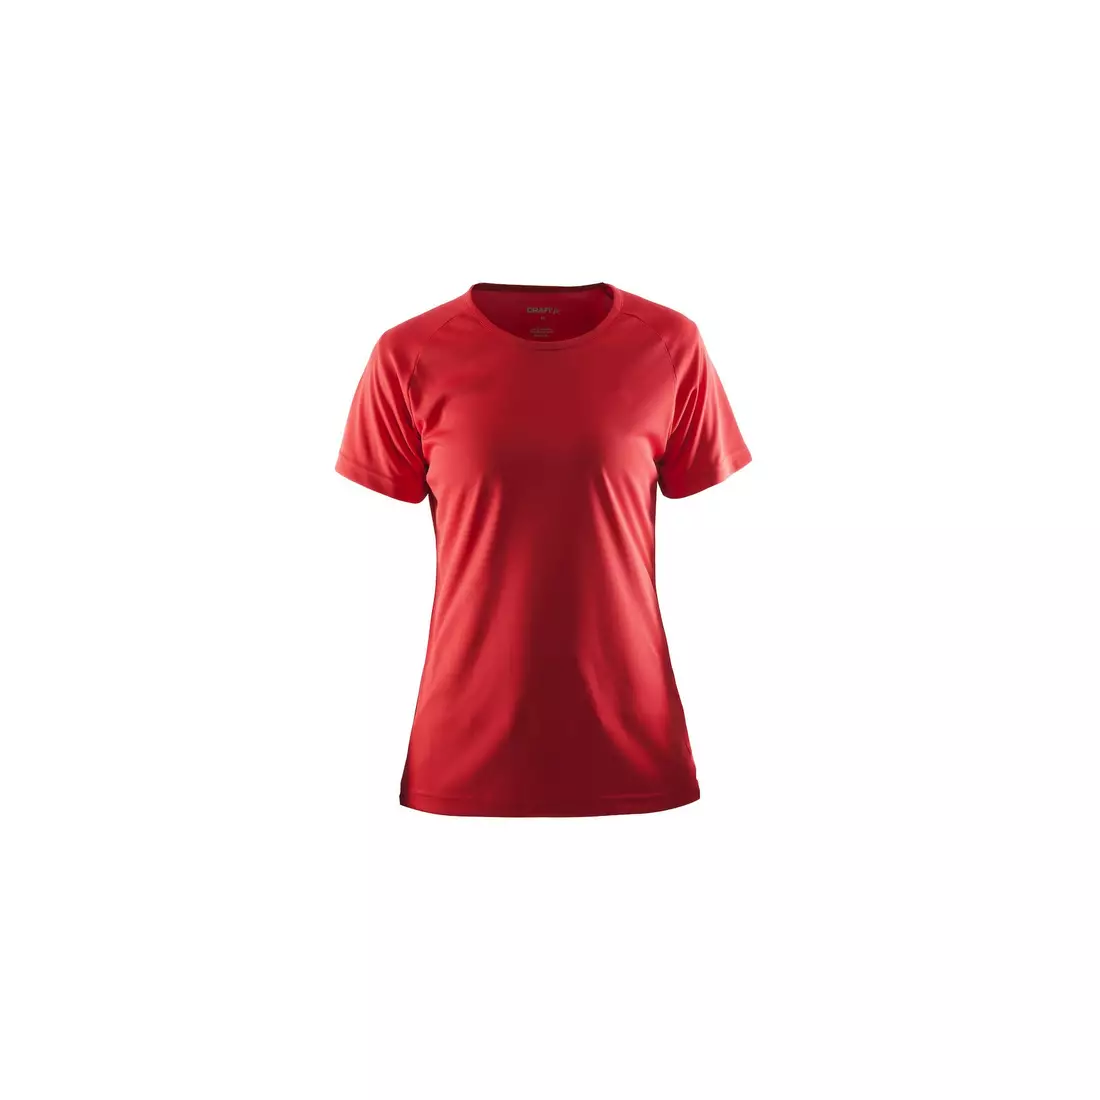 CRAFT Event Tee Damen sport t-shirt rot 1908609-430000